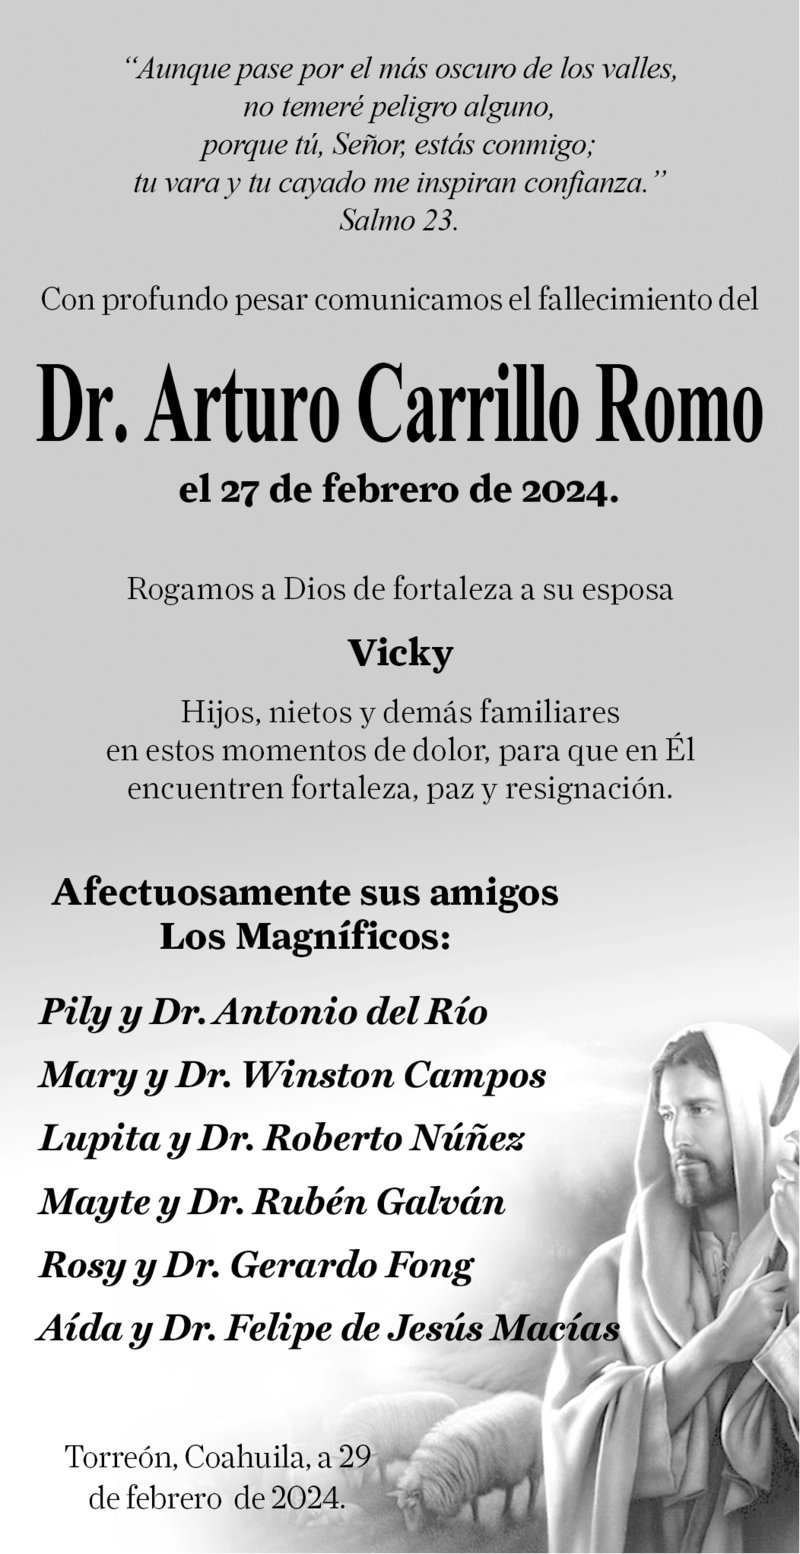 CONDOLENCIA; DR. ARTURO CARRILLO ROMO